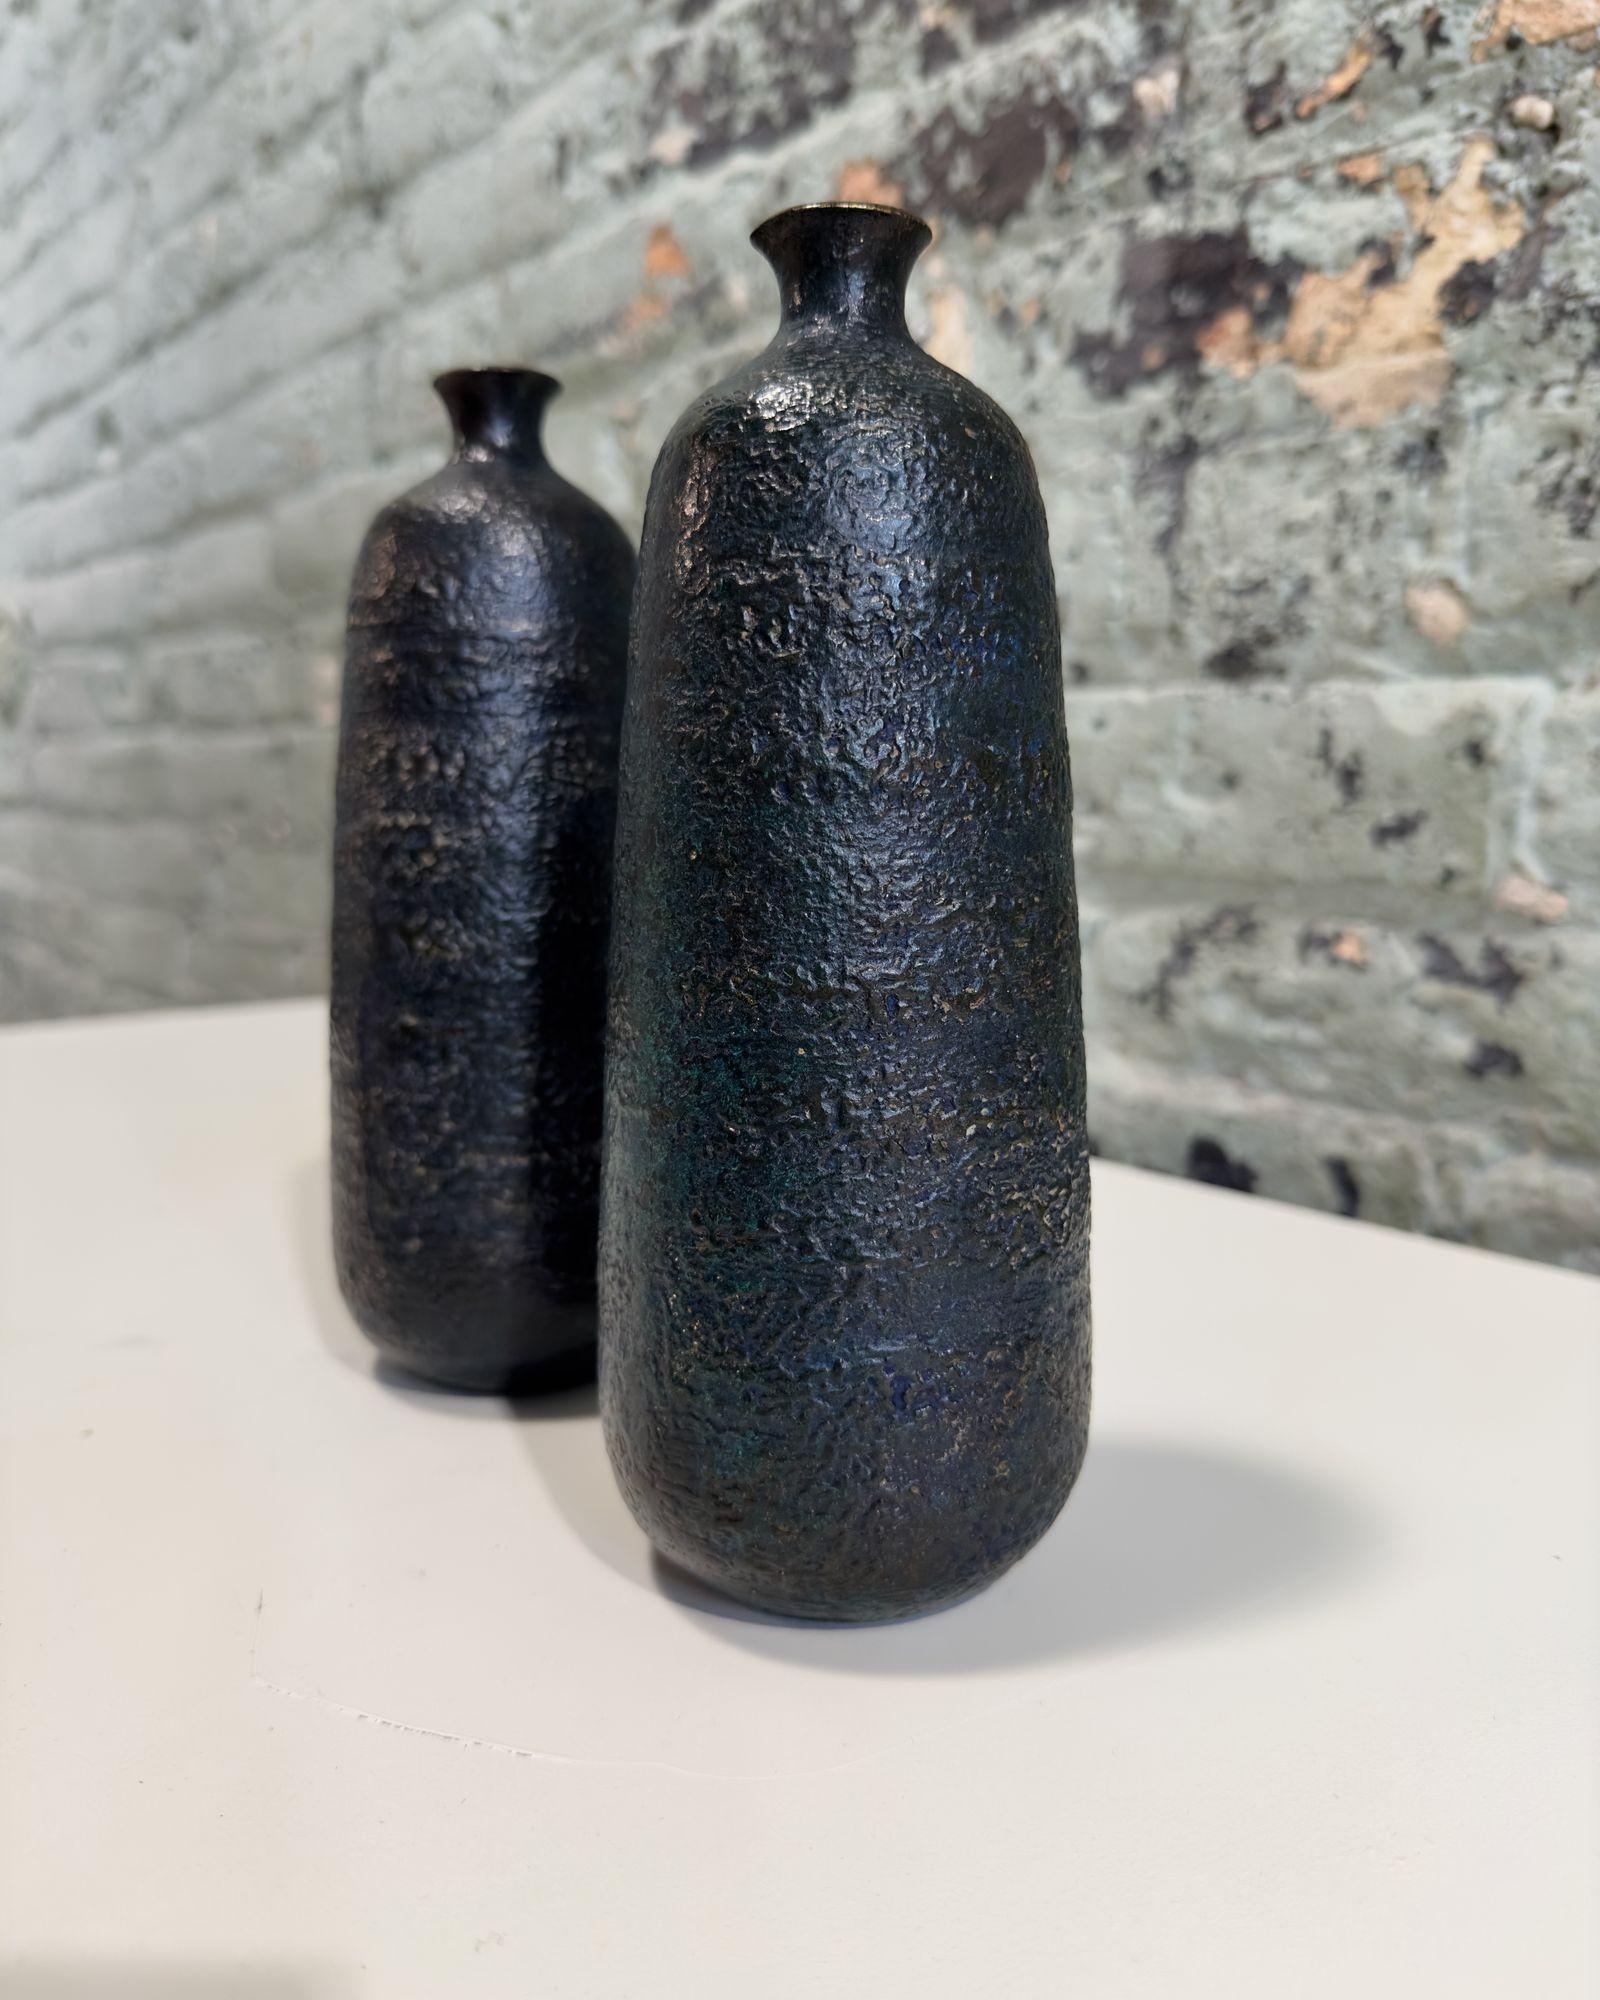 Japanese Craftsman Bronze Vases Black Volcanic Patinated Enamel, Japan 1930's For Sale 1